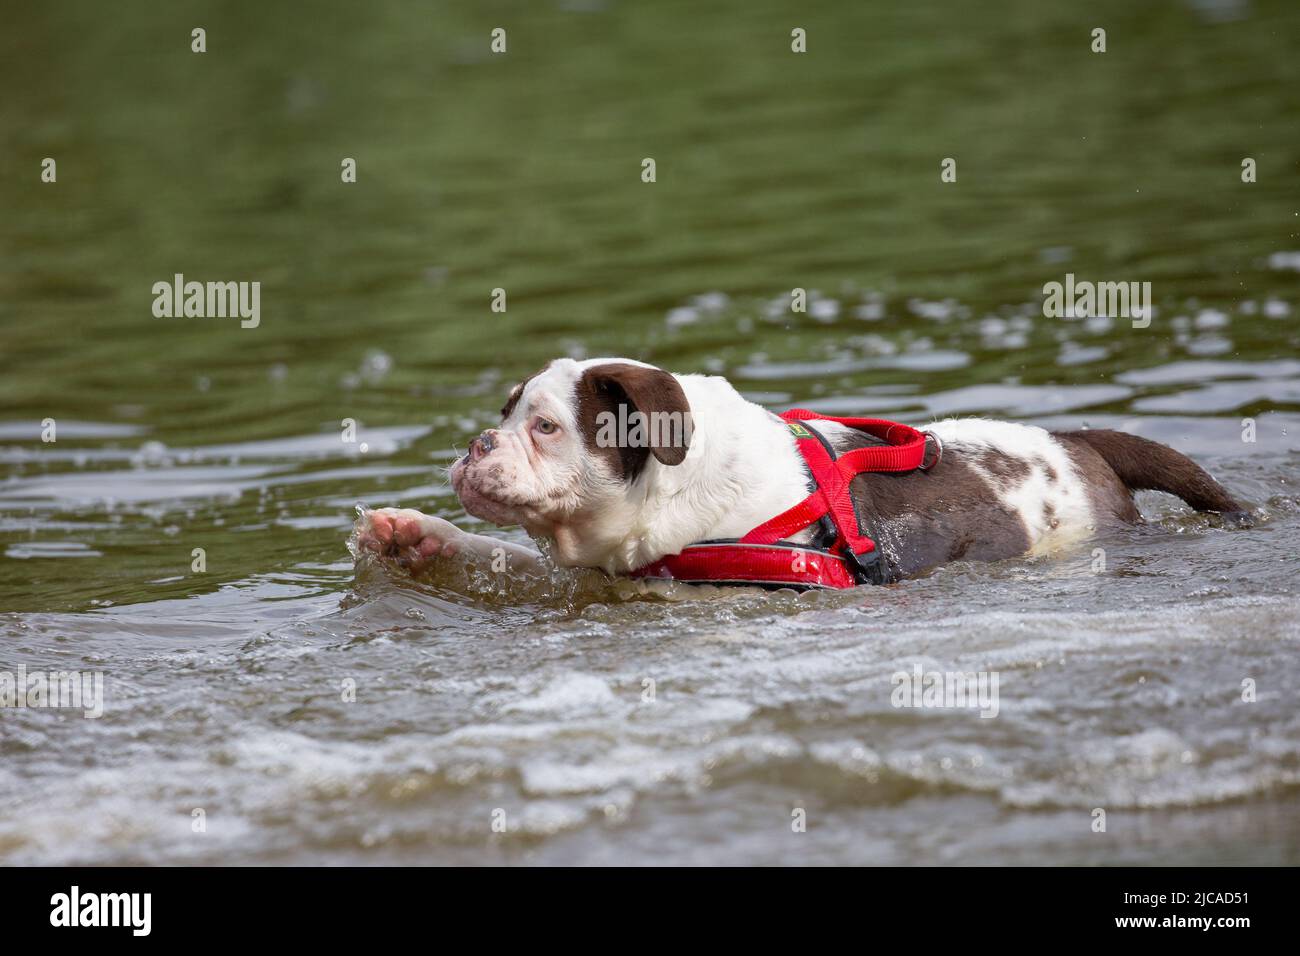 Bulldog nuoto in un lago. Cane in acqua che indossa l'imbracatura rossa Foto Stock